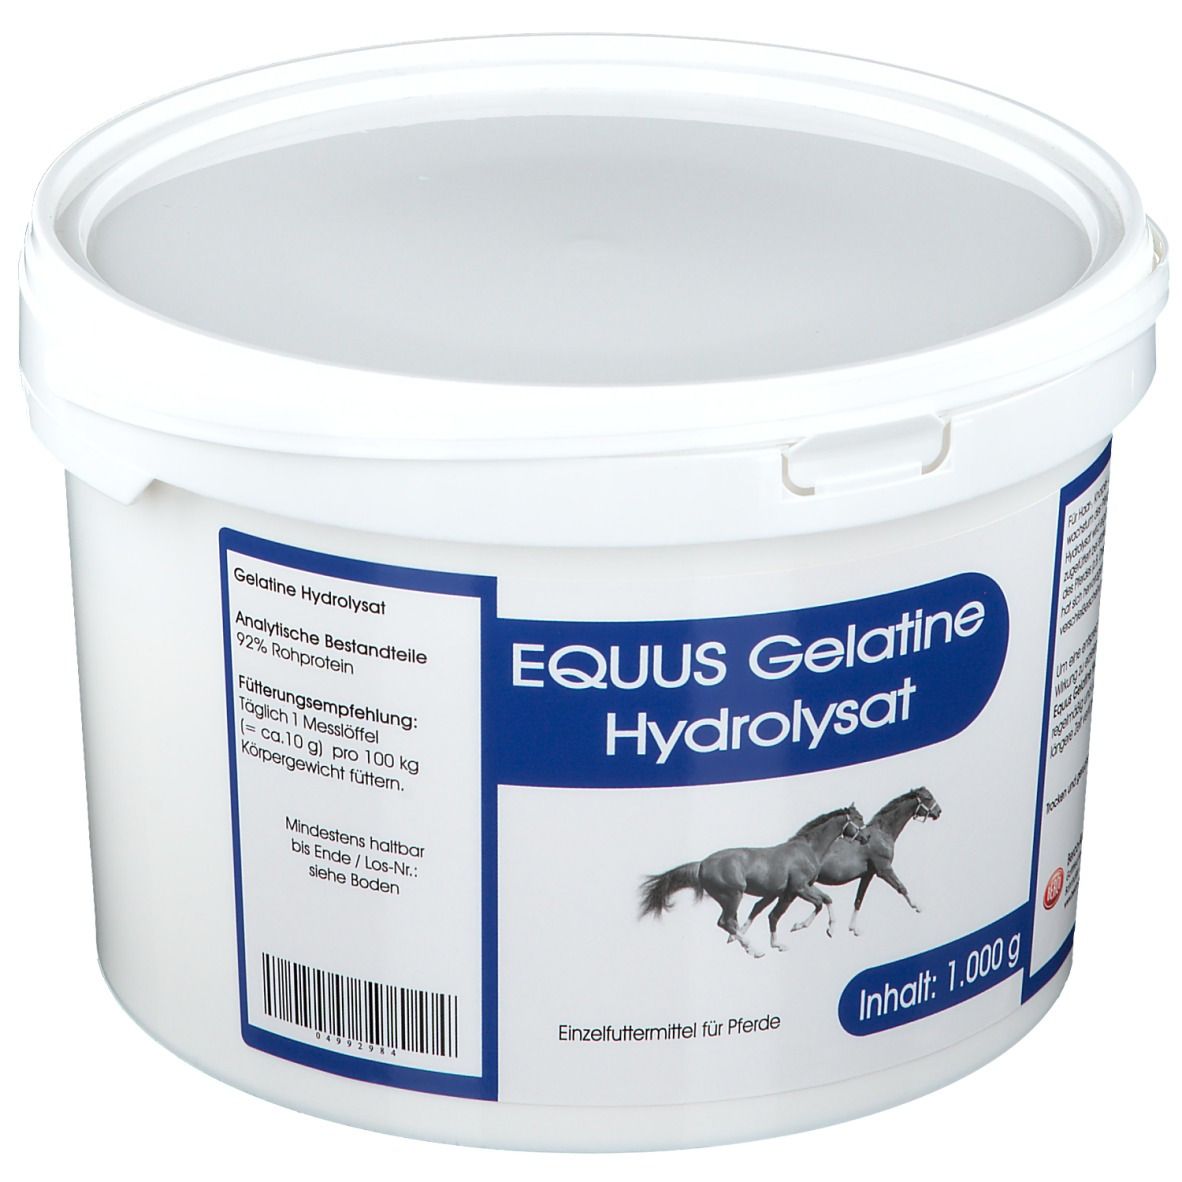 Equus Gelatine Hydrolysat